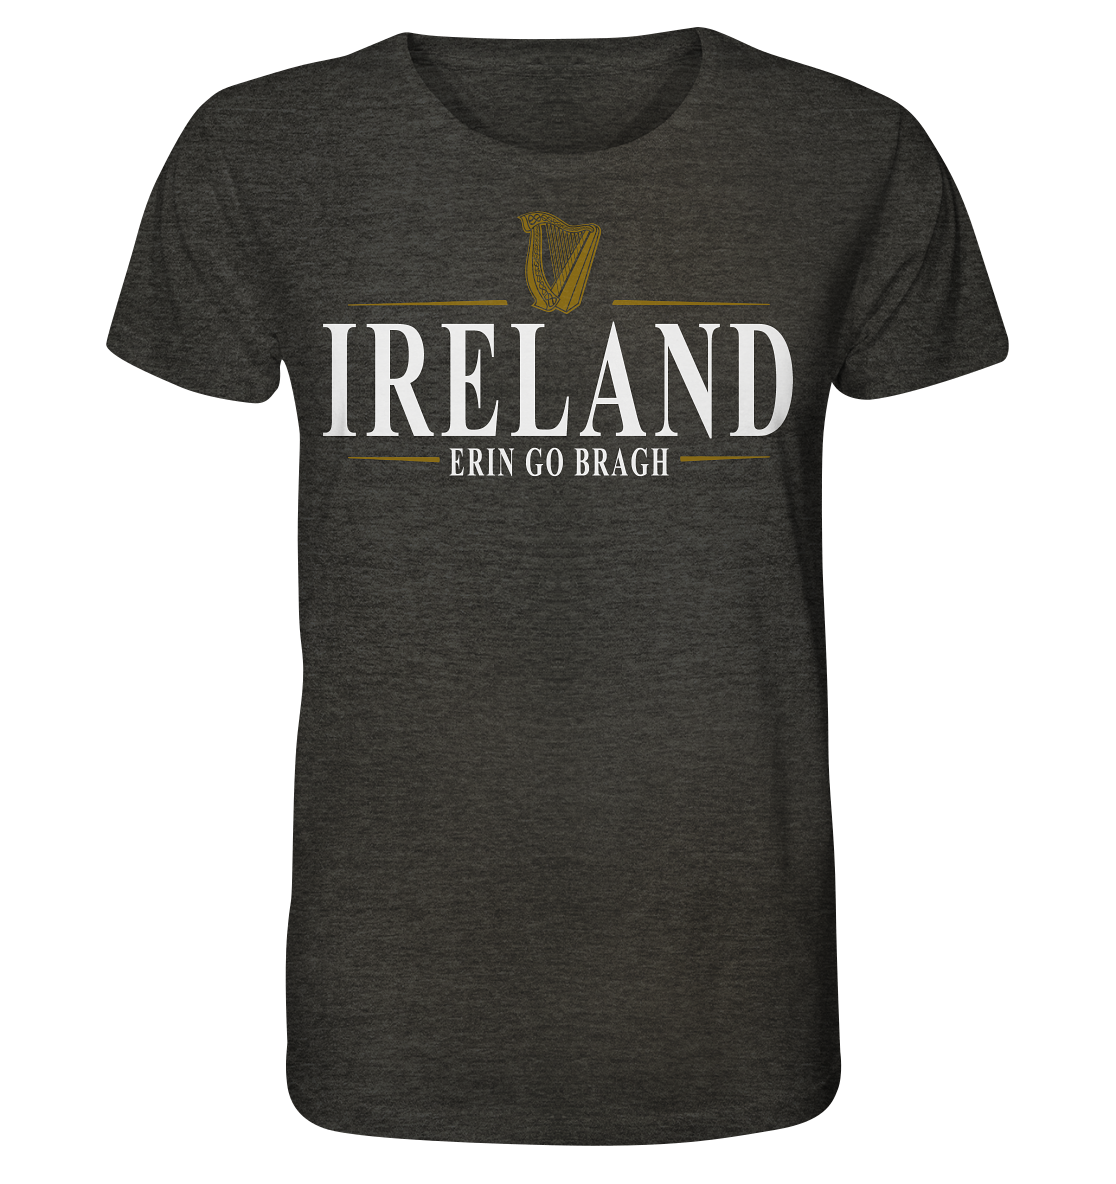 Ireland "Erin Go Bragh" - Organic Shirt (meliert)